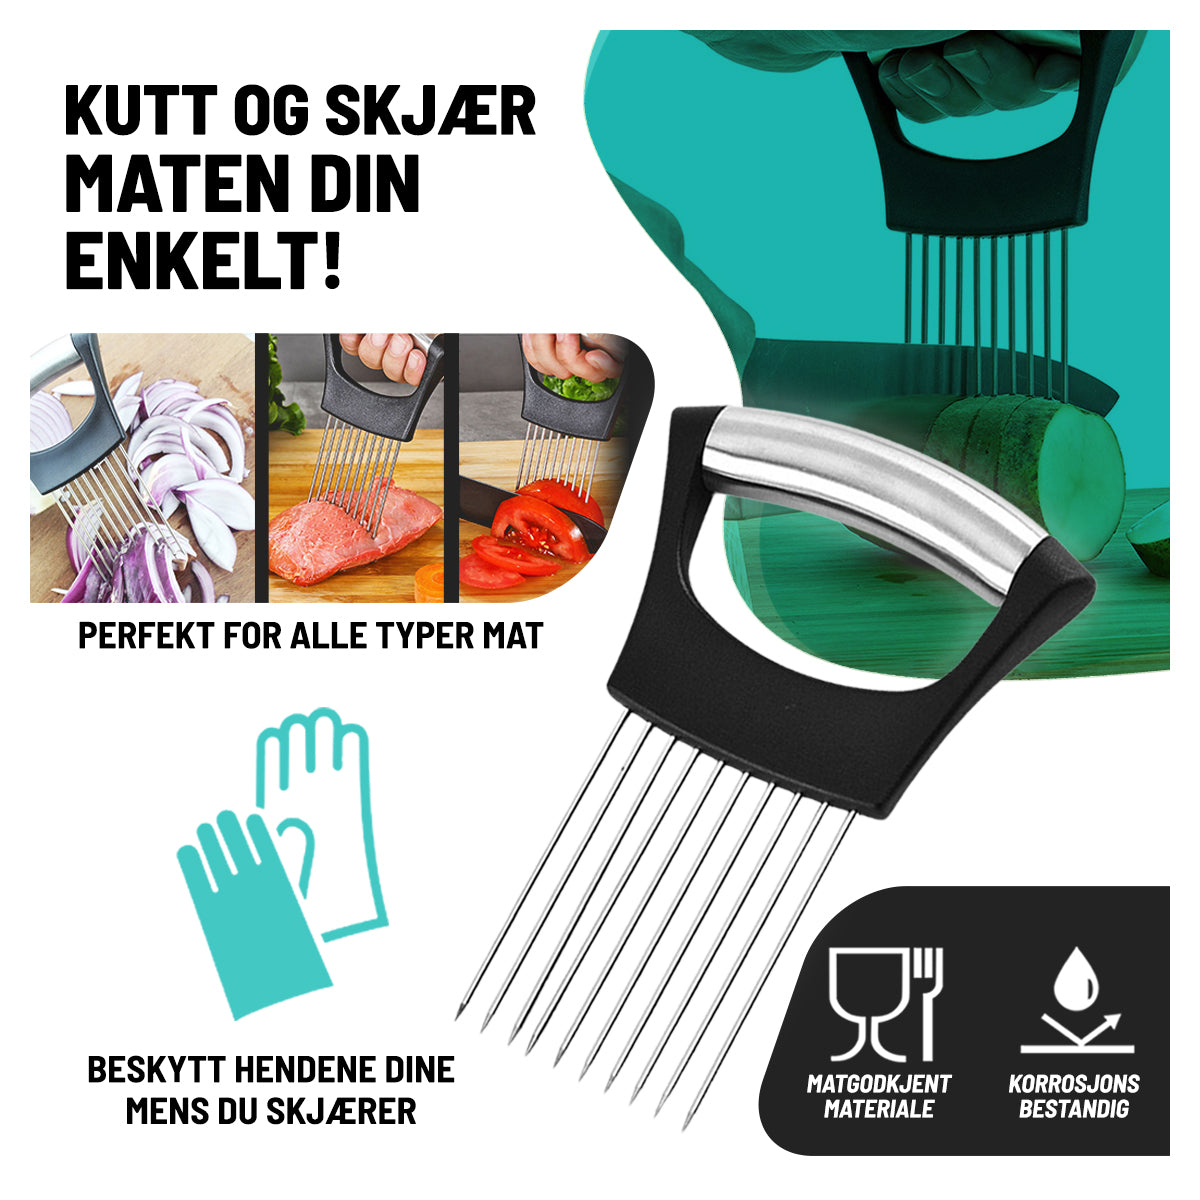 KitchenProng™ - Holder Løkgaffel for Skjæring (Kjøp 1 Få 1 GRATIS)